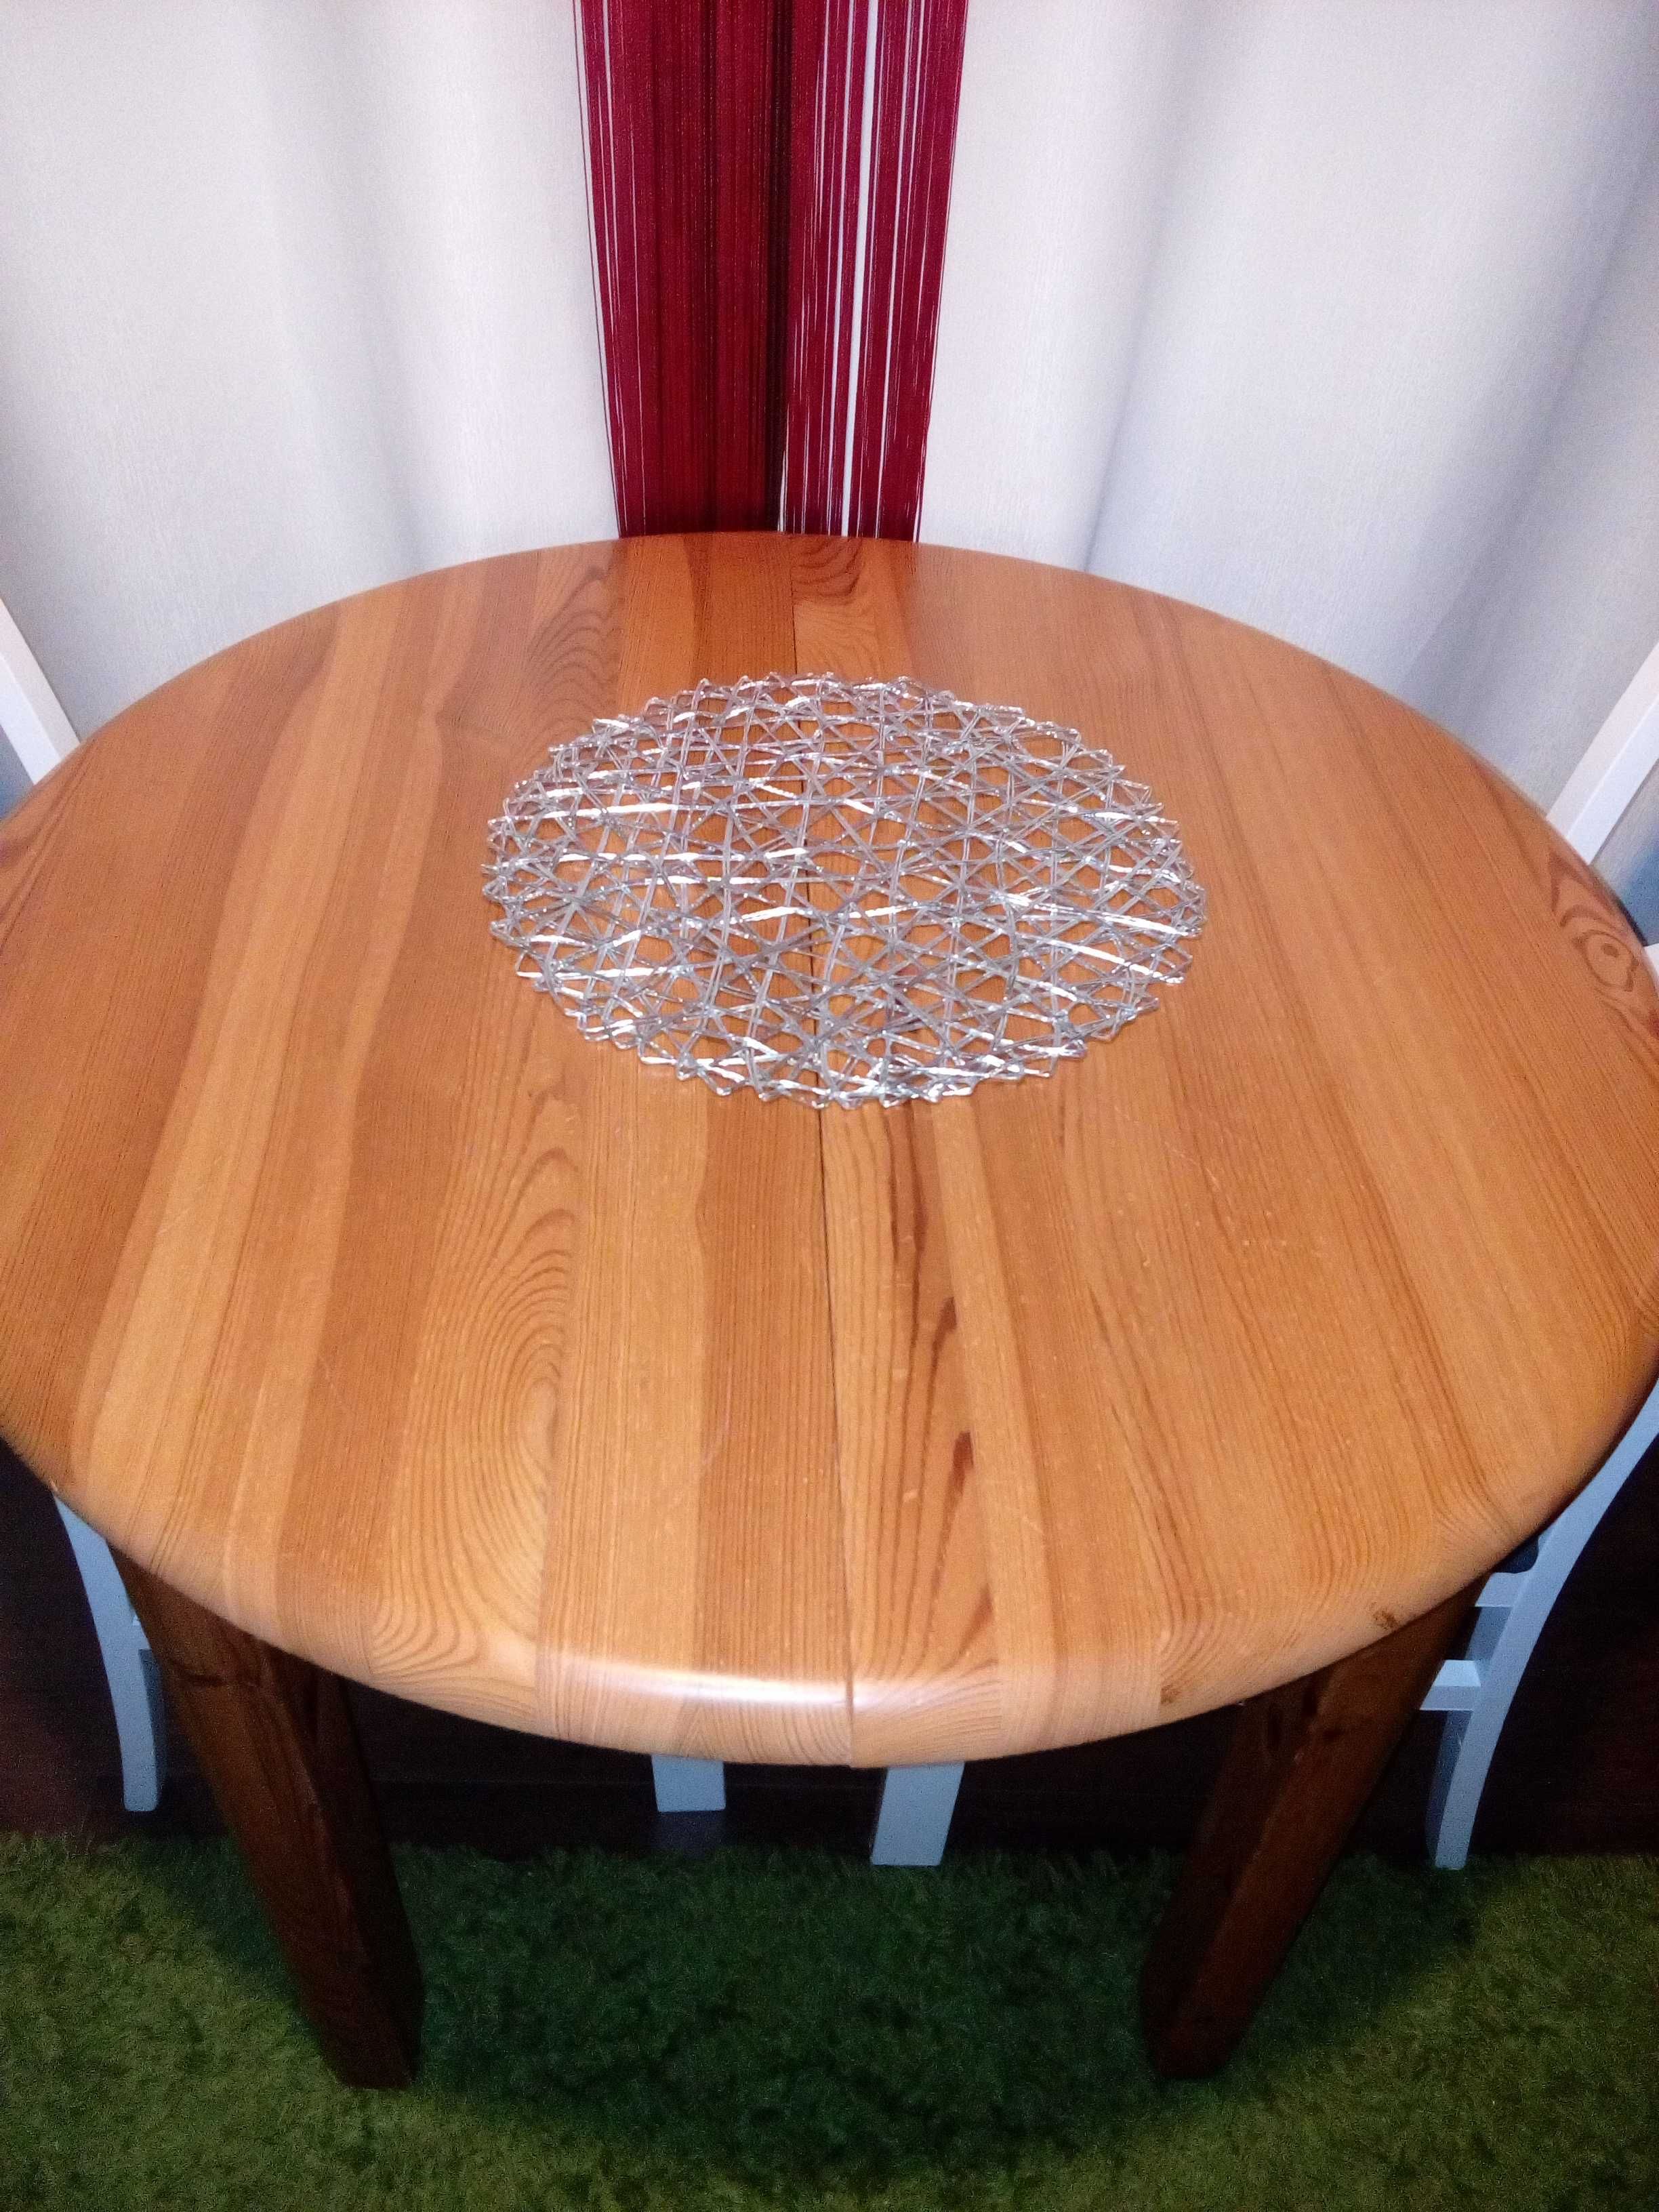 Stół drewniany okrągły rozkładany.